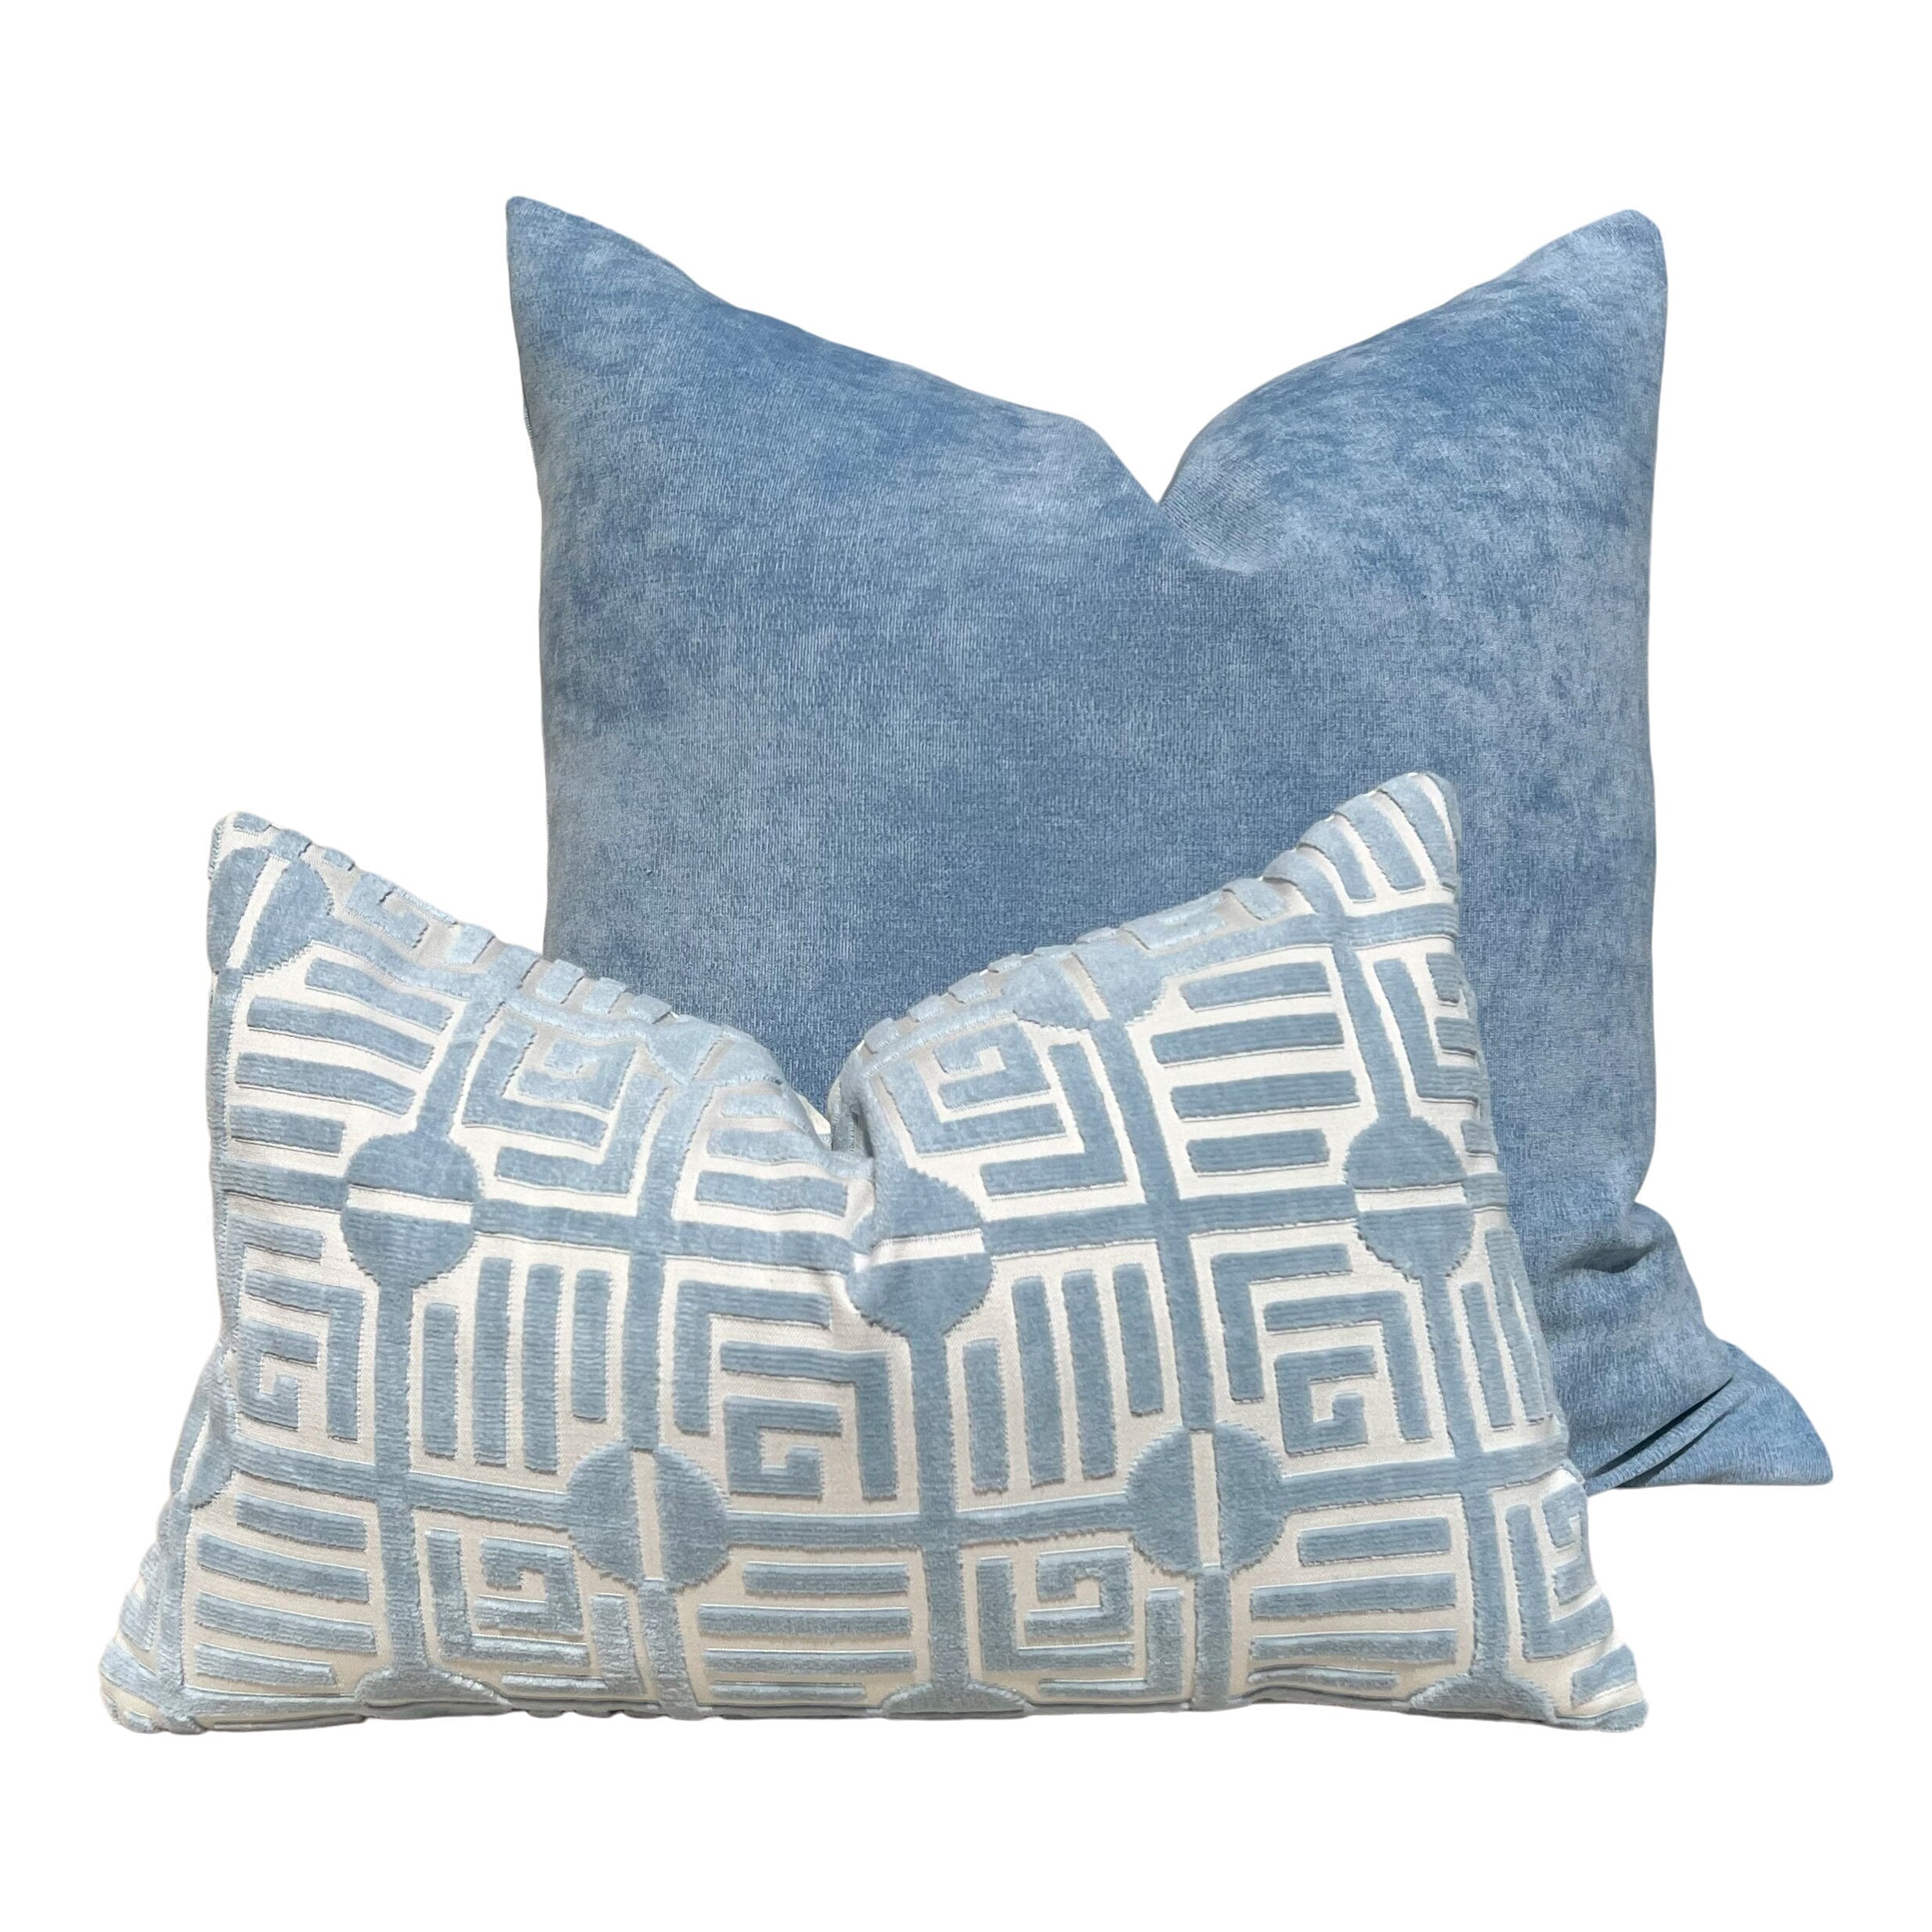 Thibaut Labyrinth Velvet Pillow in Spa Blue. High End Pillows, Designer Raised Velvet Pillows, Geometric Velvet Pillows in Light Blue